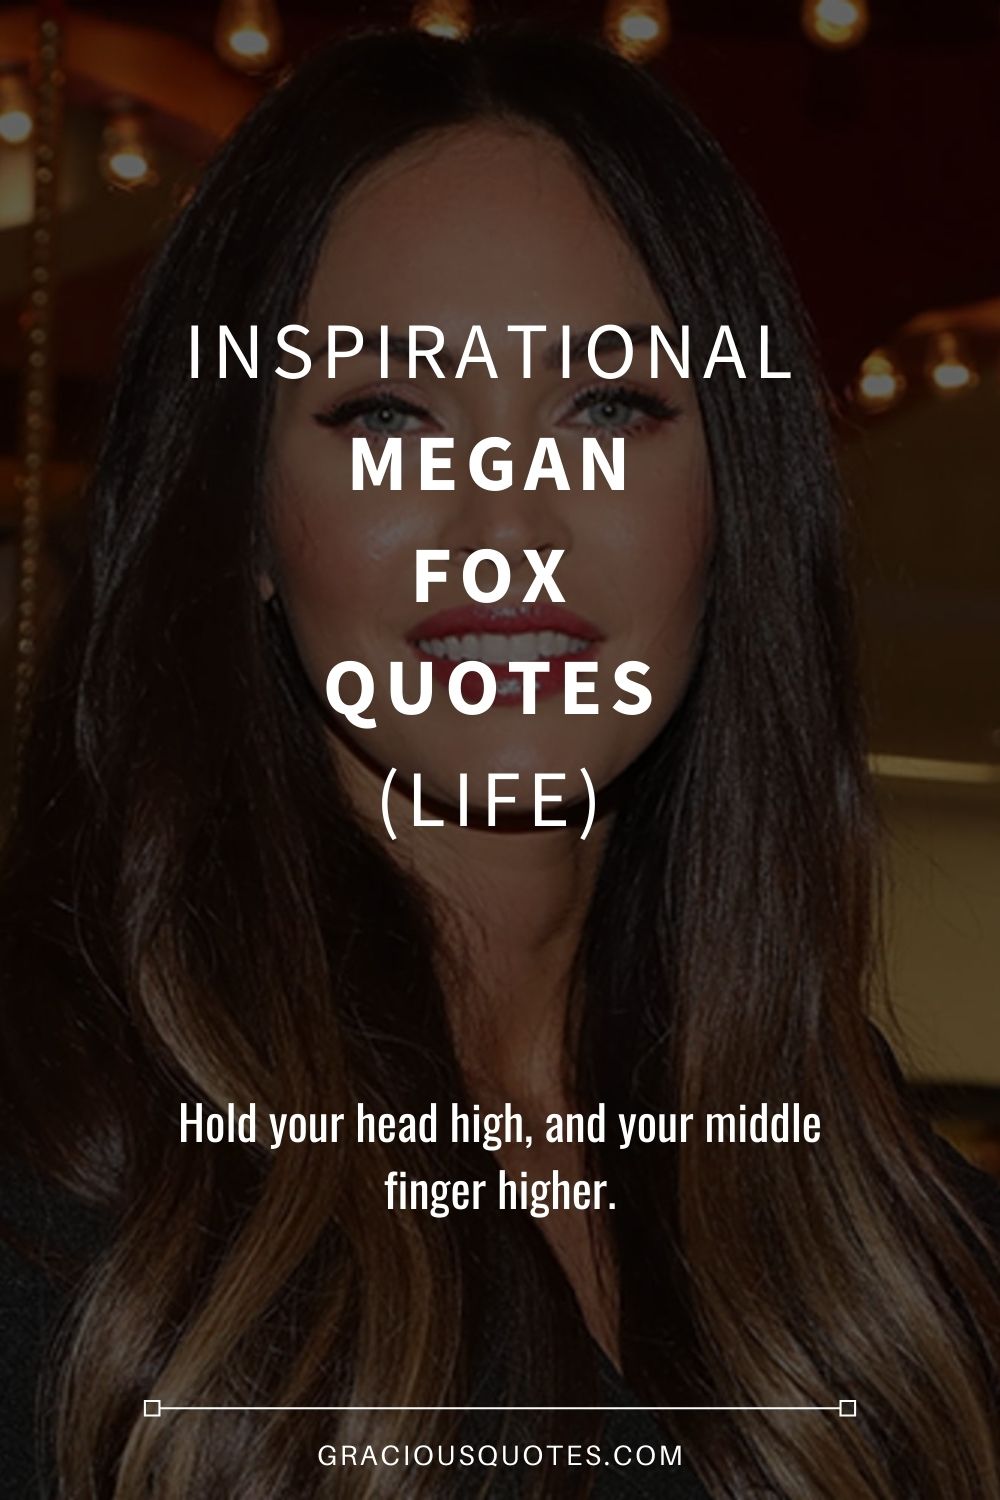 Inspirational Megan Fox Quotes (LIFE) - Gracious Quotes